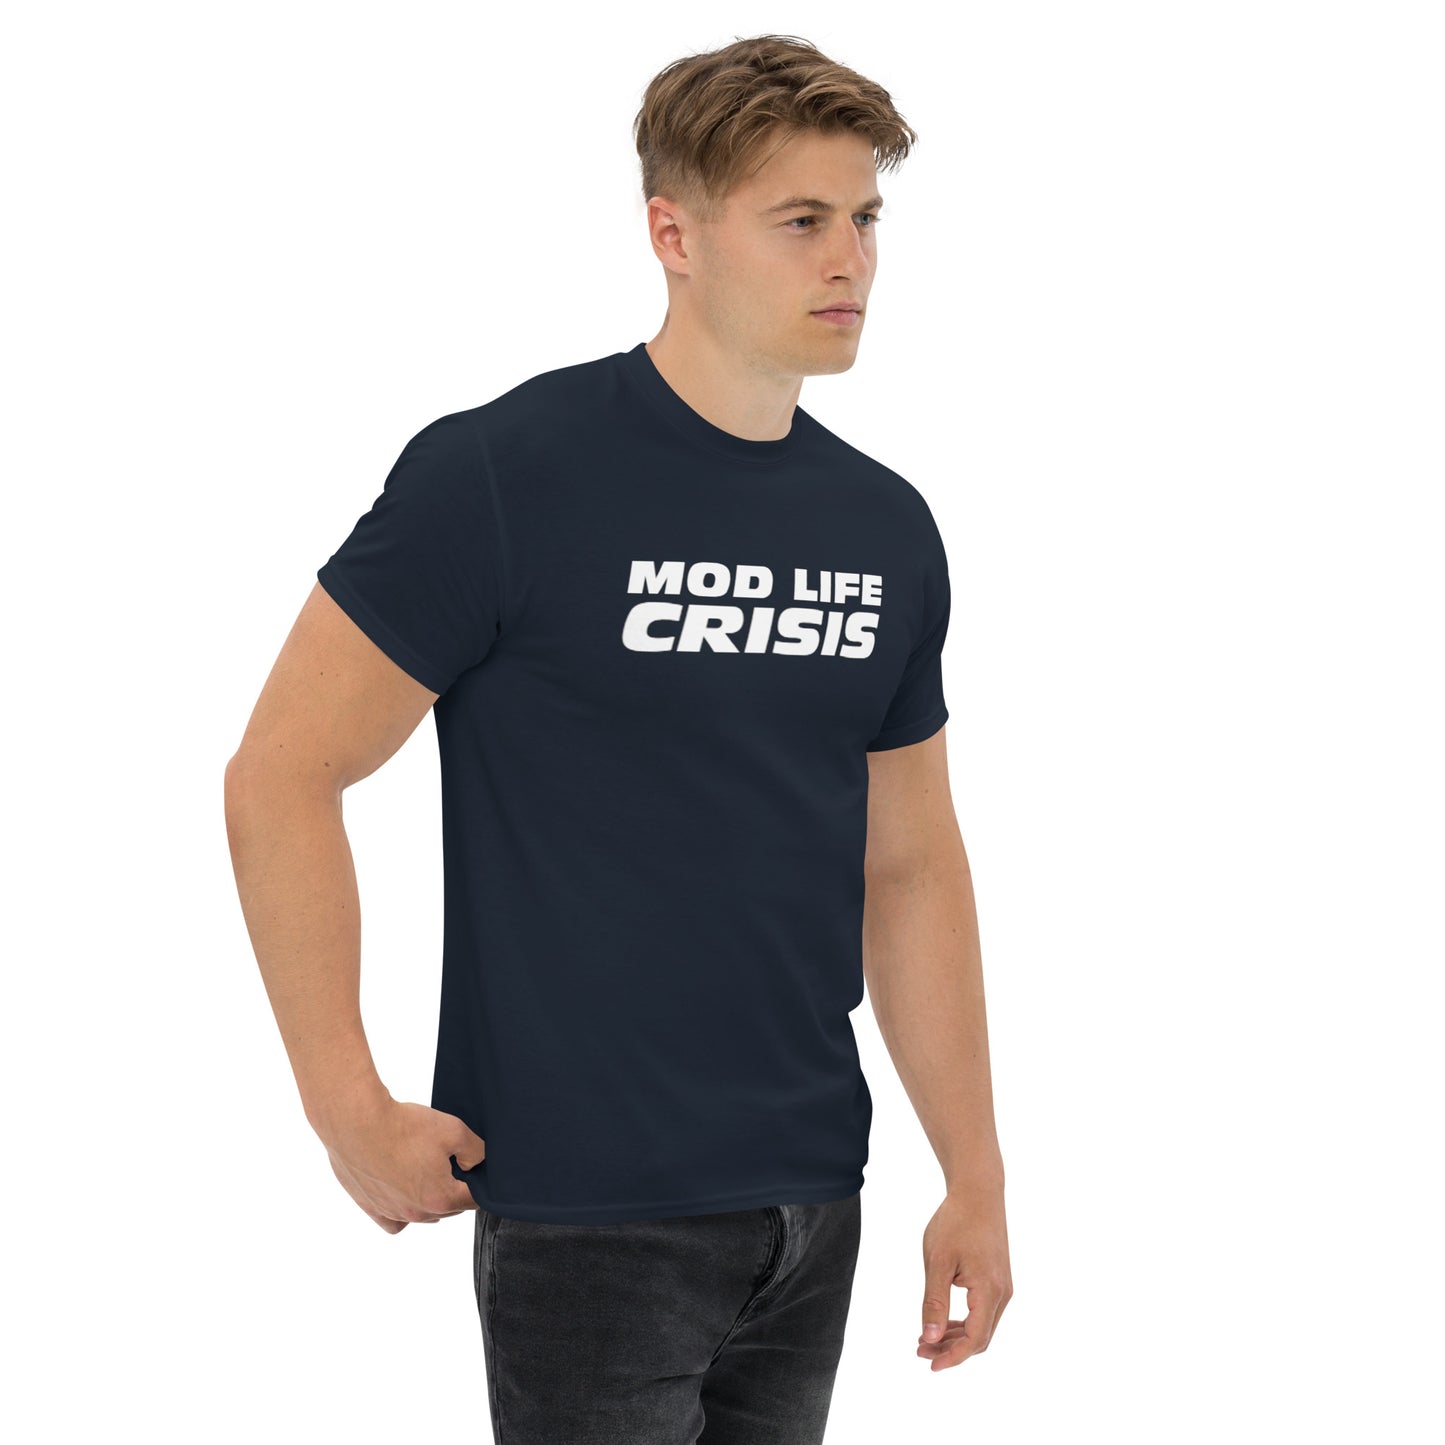 MOD LIFE CRISIS - Men's classic tee